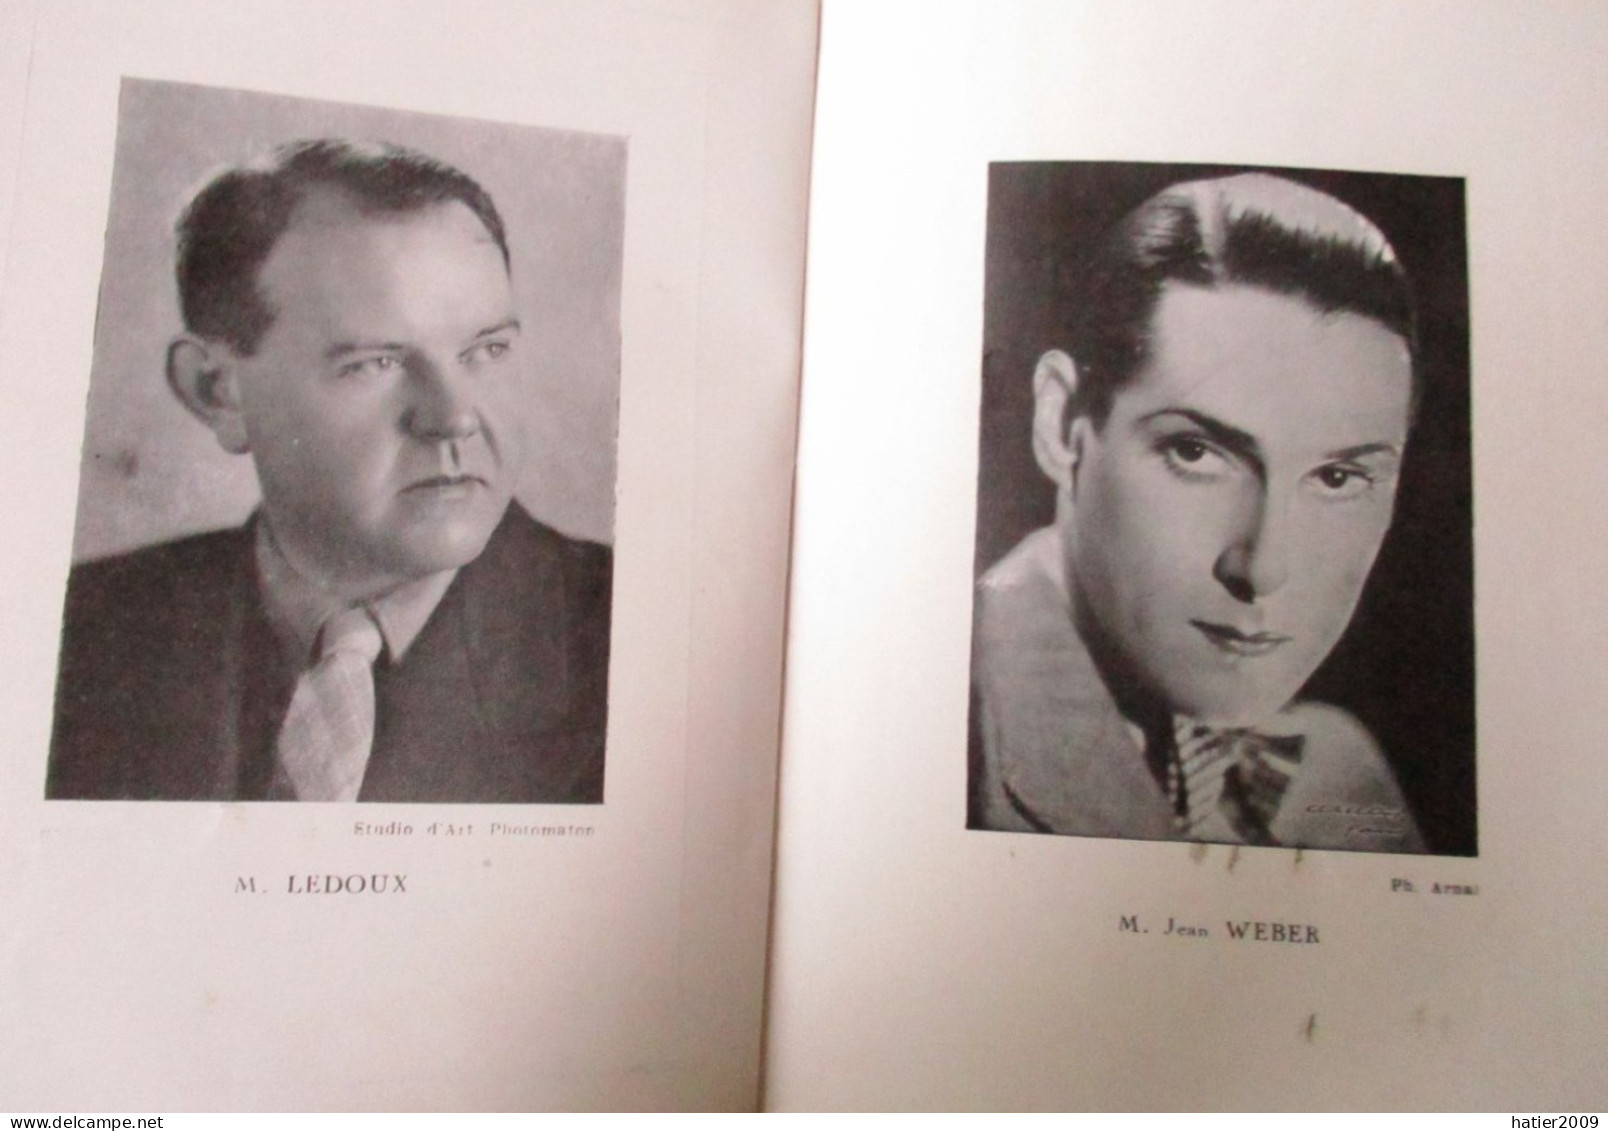 Programme COMEDIE FRANCAISE "Les affaires sont les affaires" - 7 Janvier 1937 - 32 pages joliment illustrées